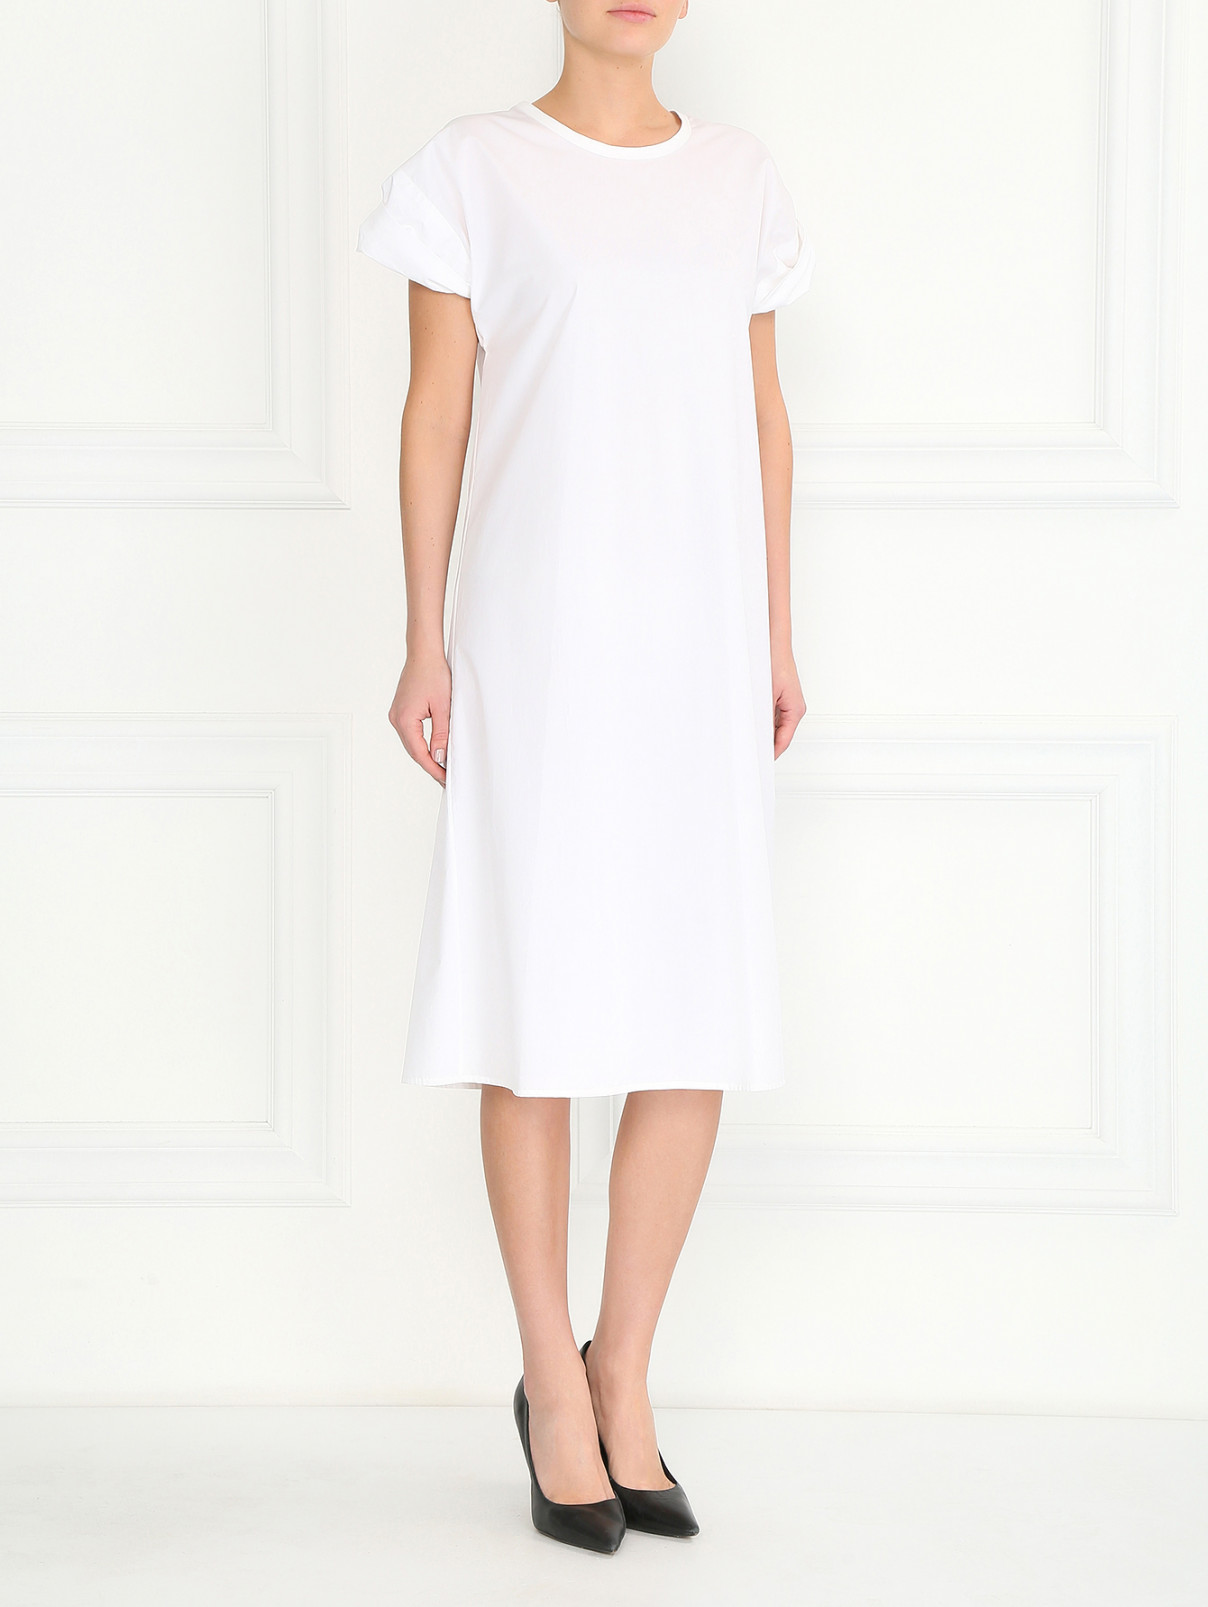 Платье-миди из хлопка Jil Sander  –  Модель Общий вид  – Цвет:  Белый